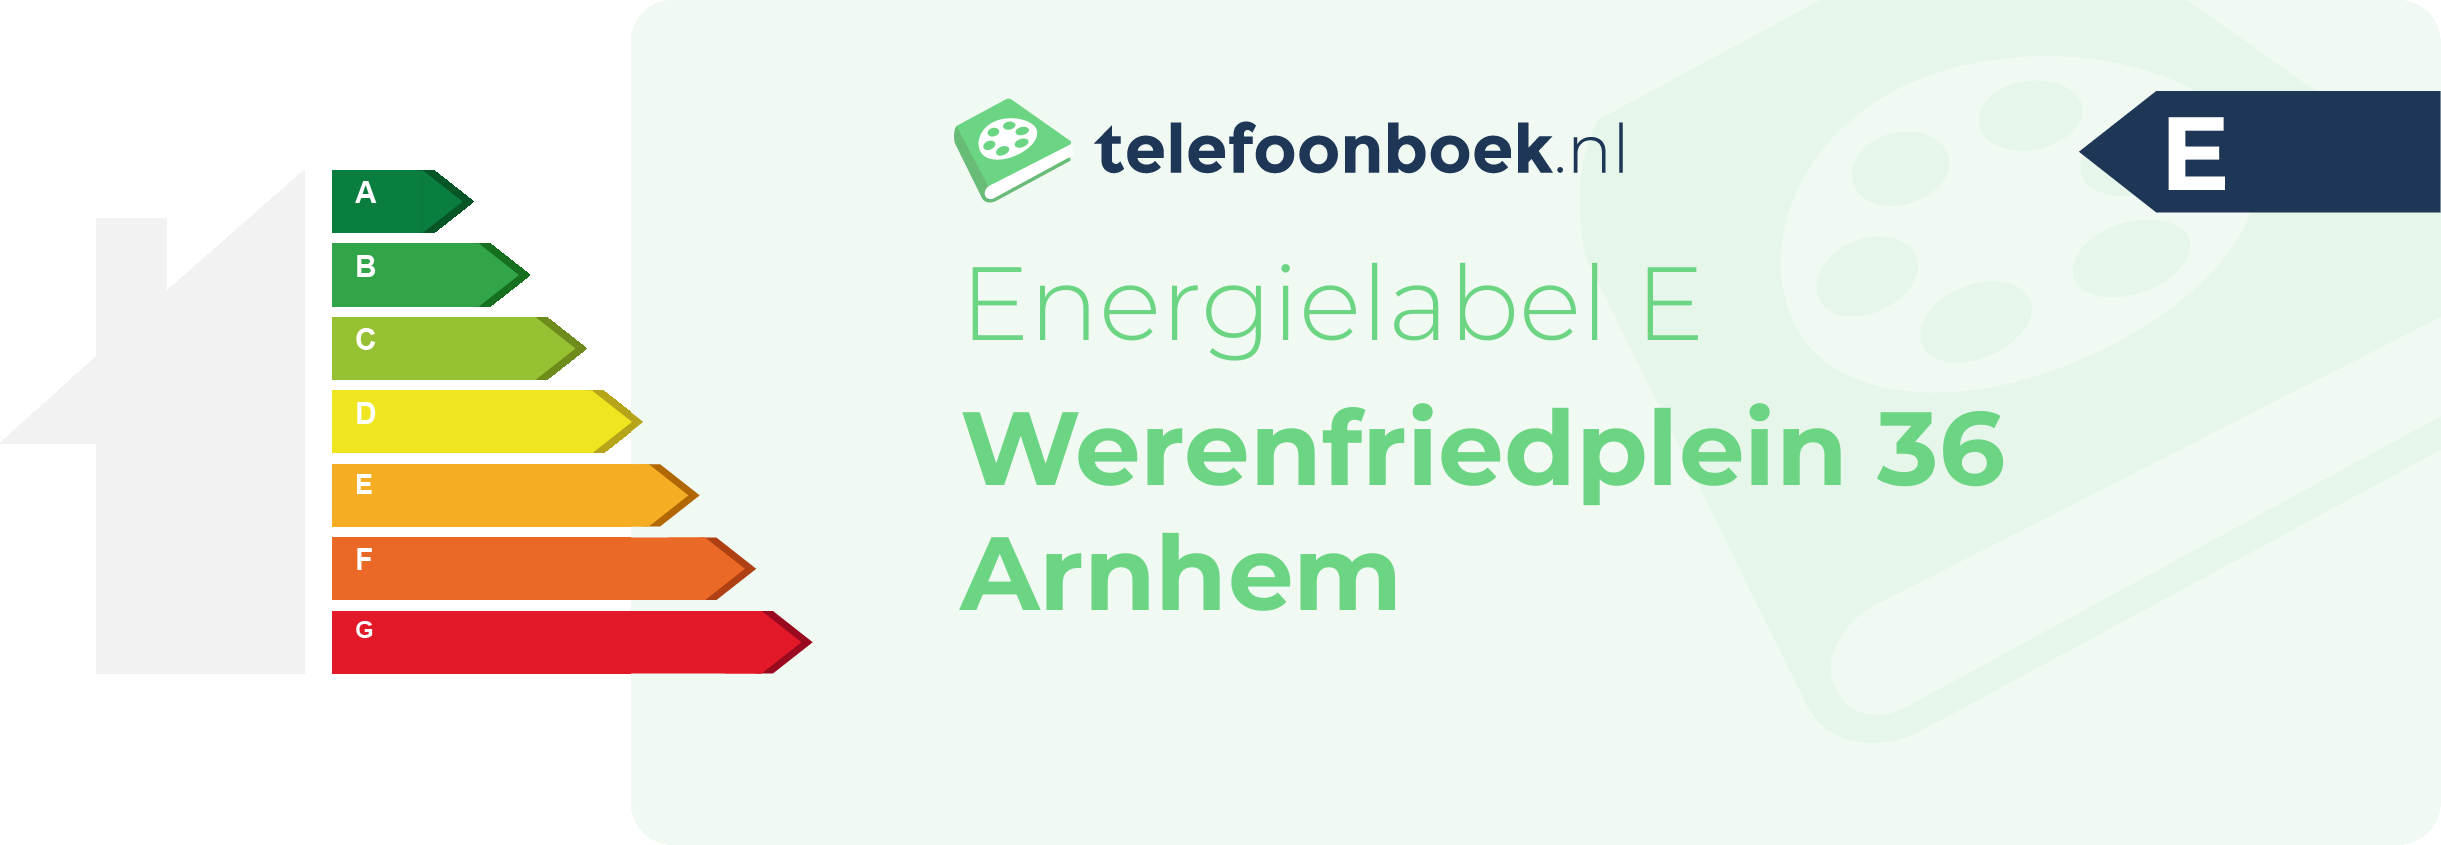 Energielabel Werenfriedplein 36 Arnhem